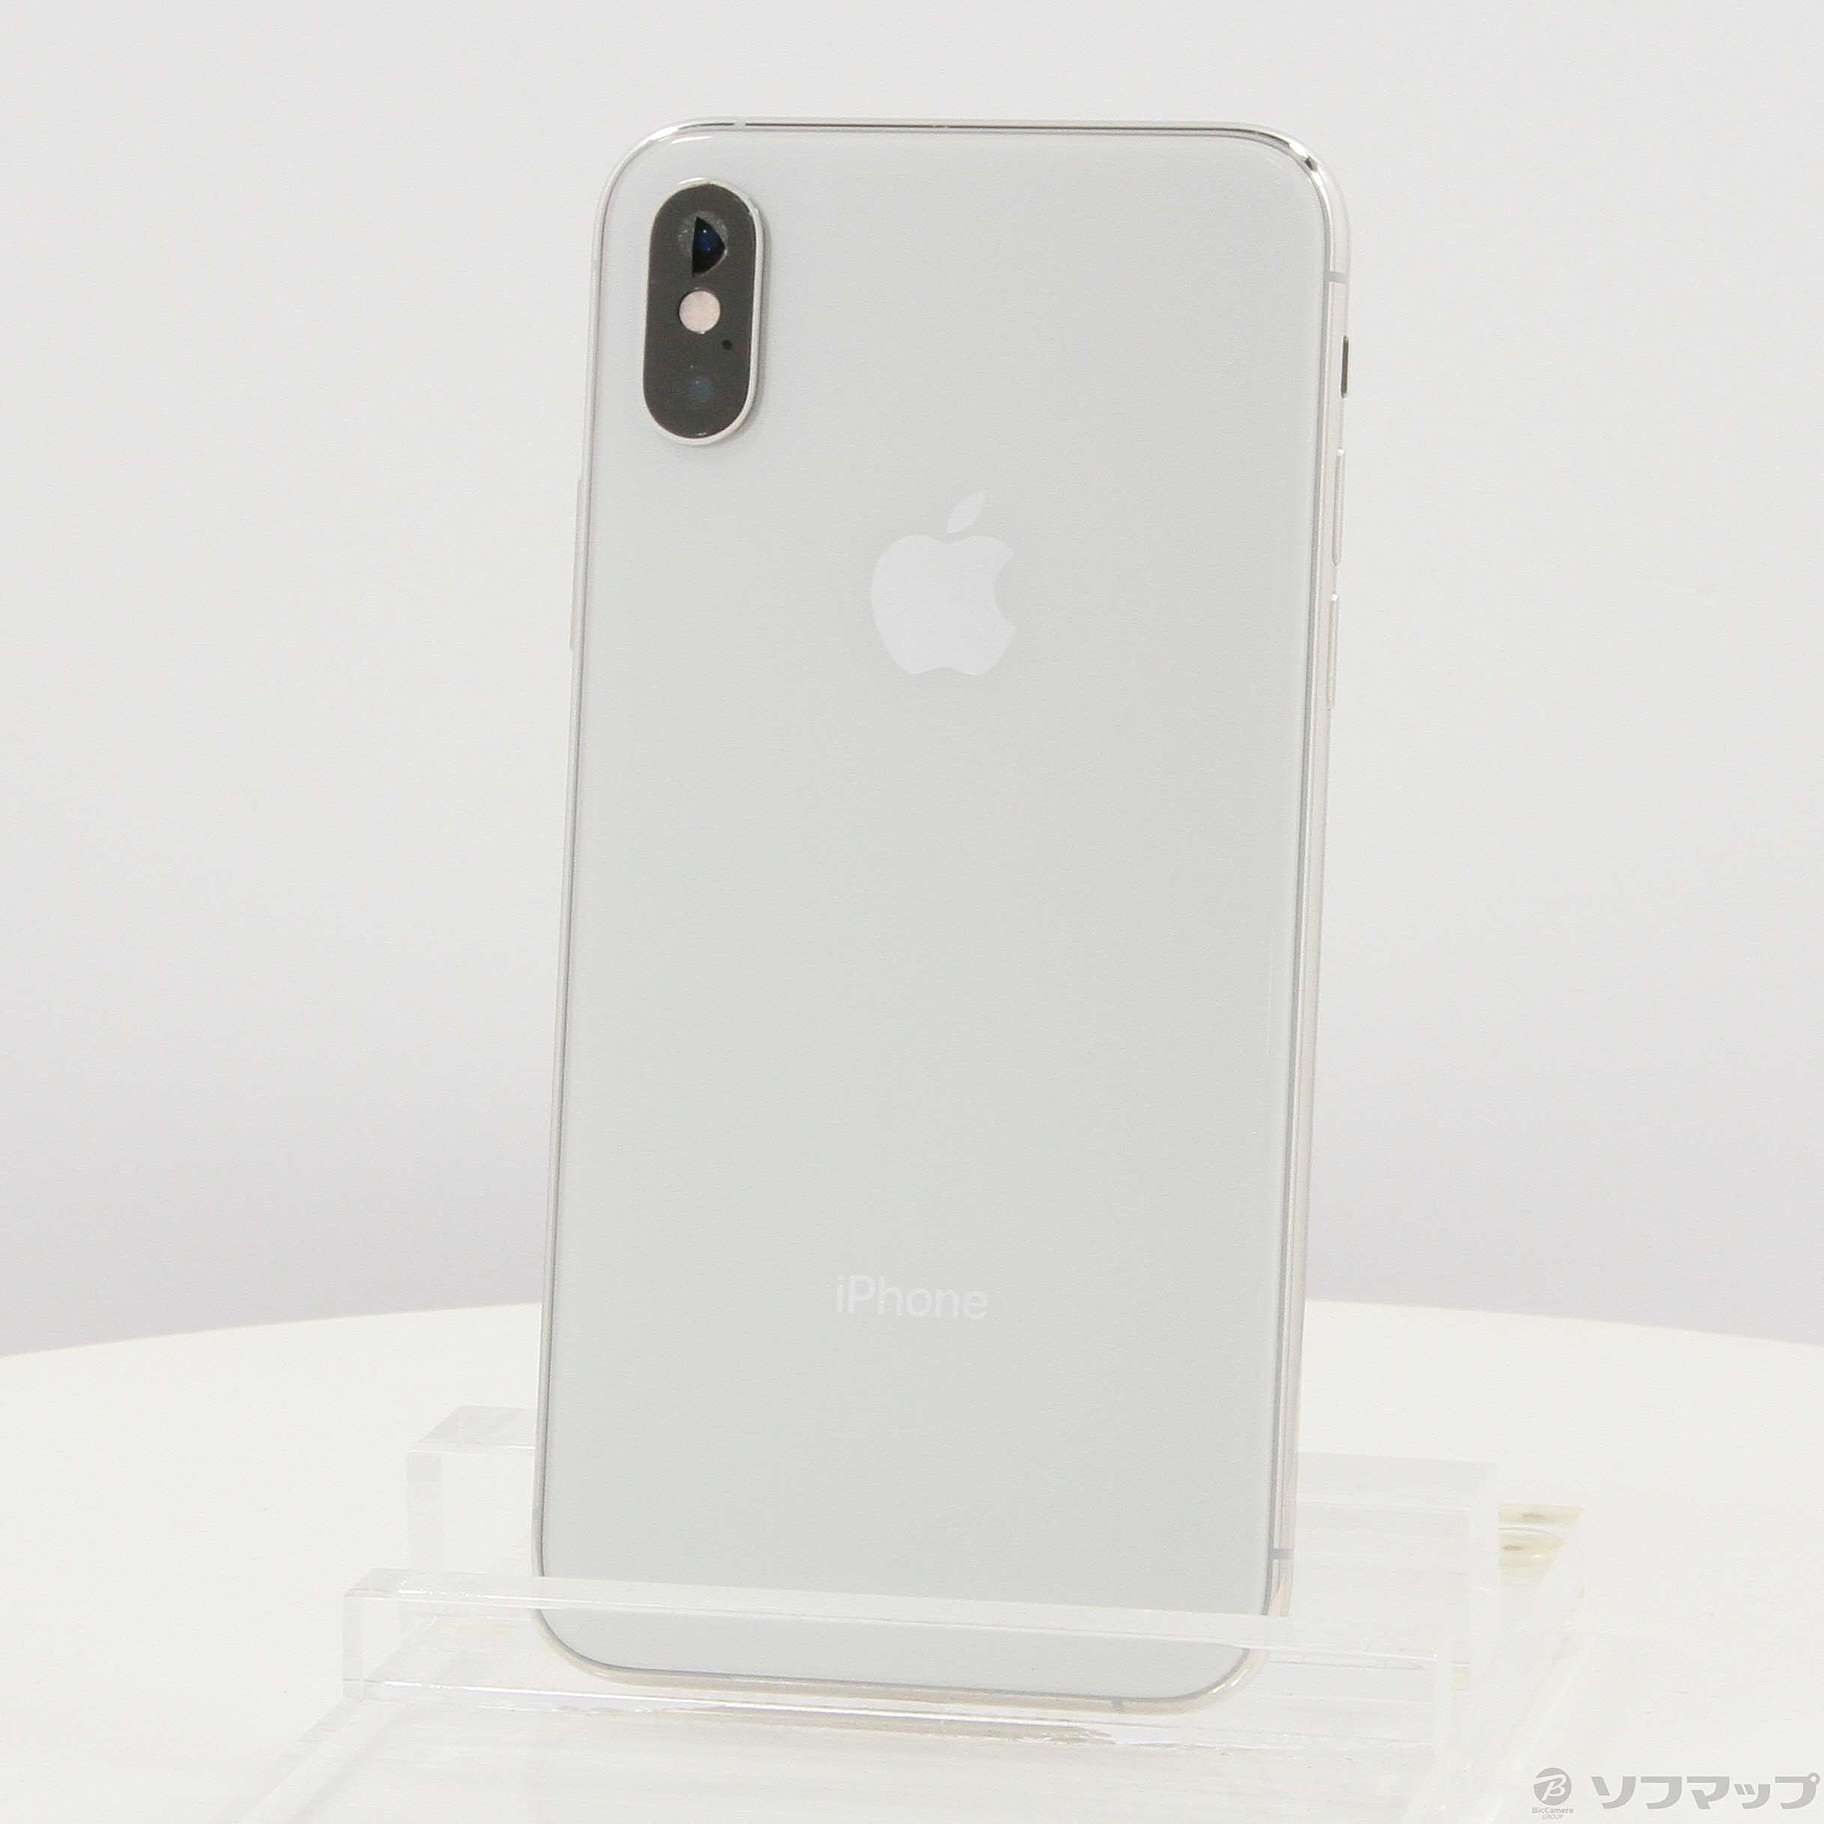 アップル iPhoneXS 256GB Silver